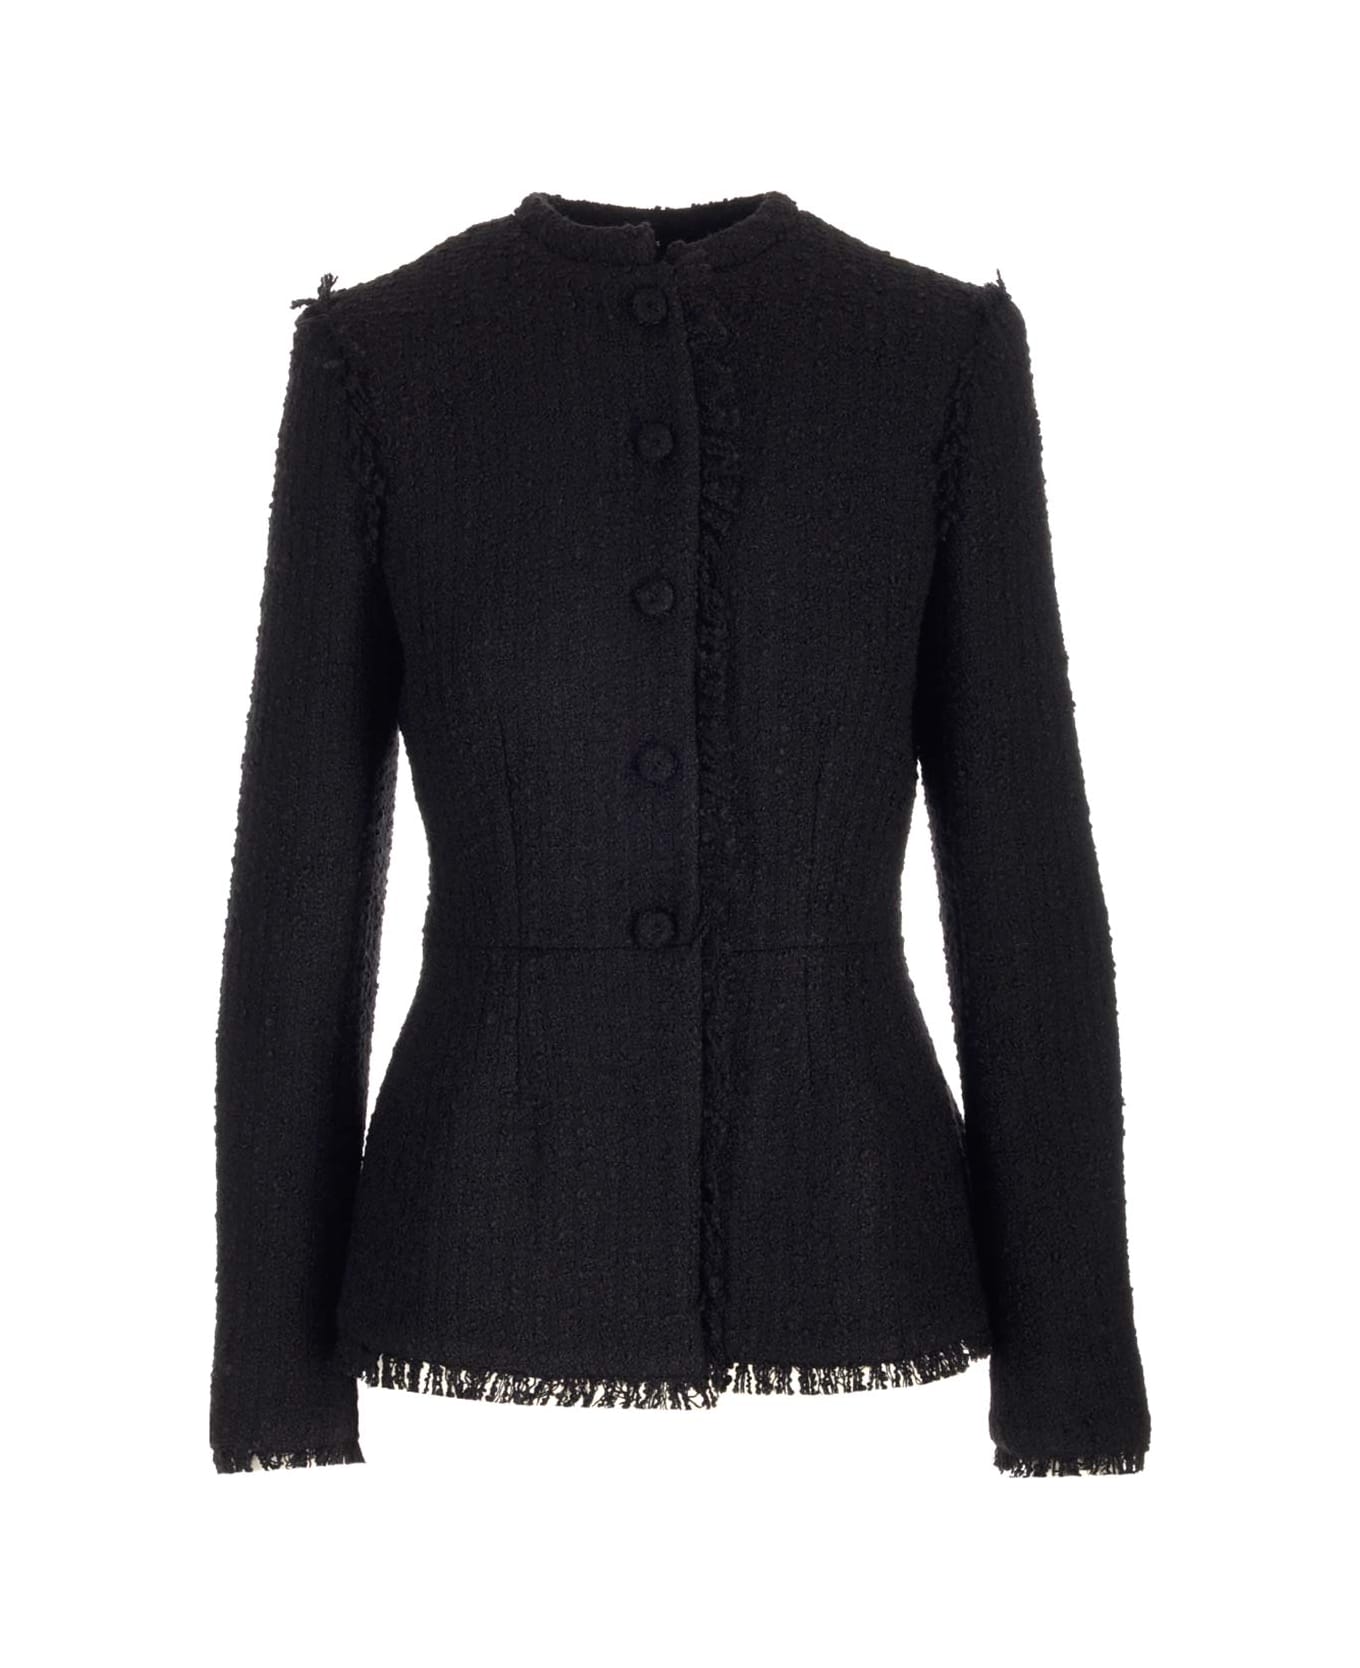 Del Core Tweed Jacket - Black